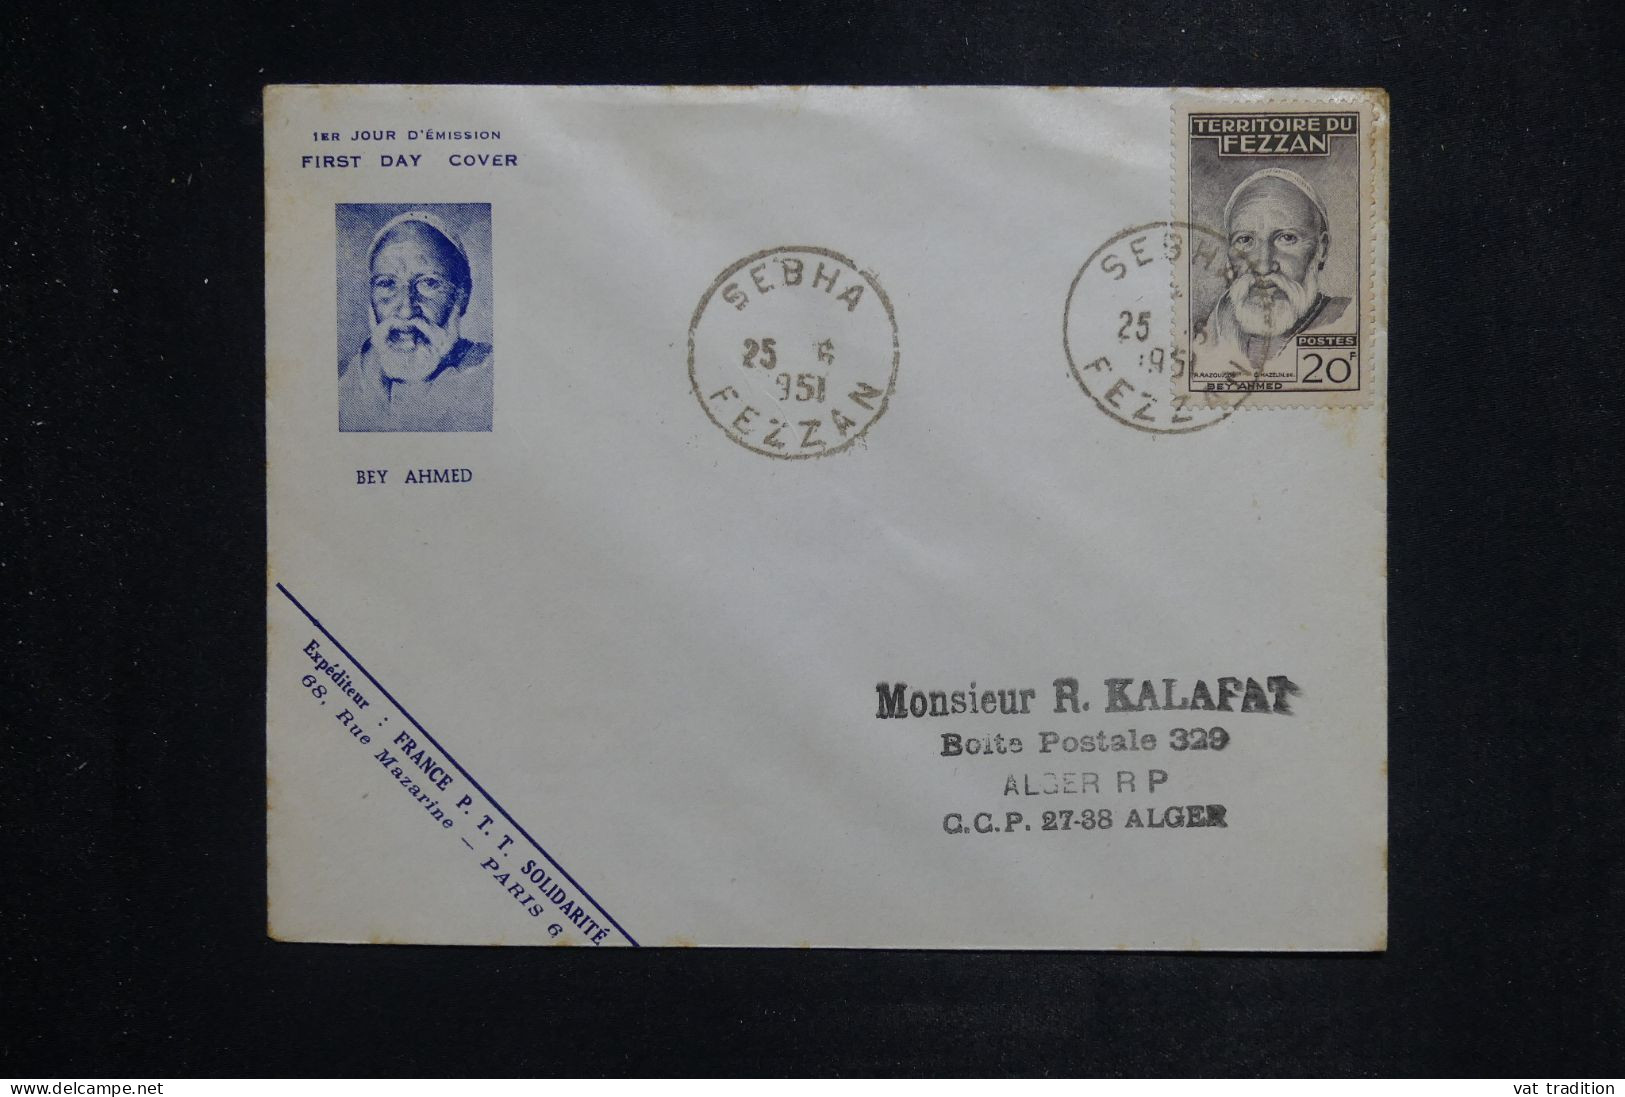 FEZZAN  - Enveloppe FDC En 1951 - Beyahmed - L 151104 - Briefe U. Dokumente